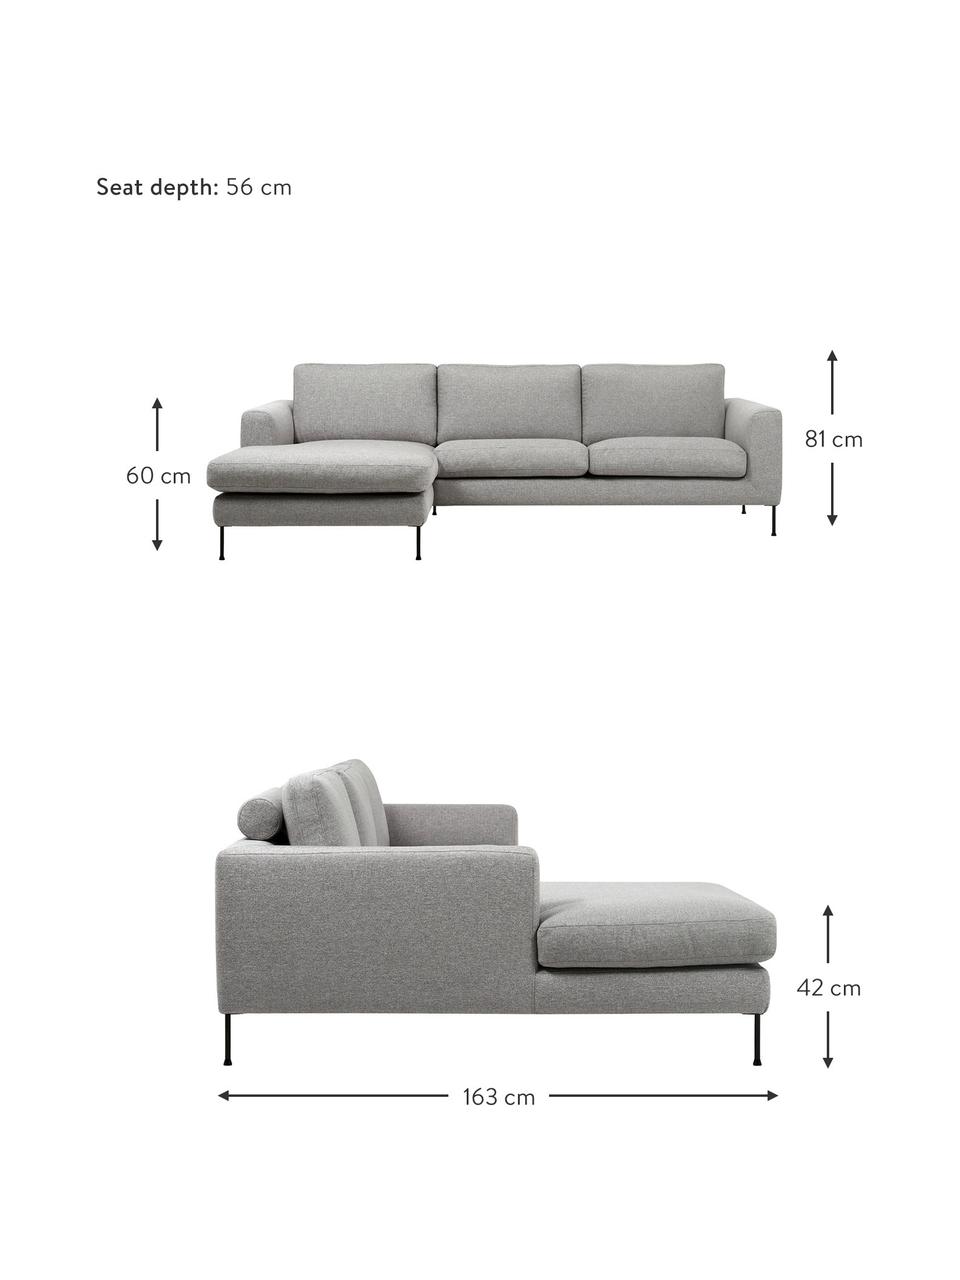 Canapé d'angle 3 places gris clair Cucita, Tissu gris clair, larg. 262 x prof. 163 cm, méridienne à gauche